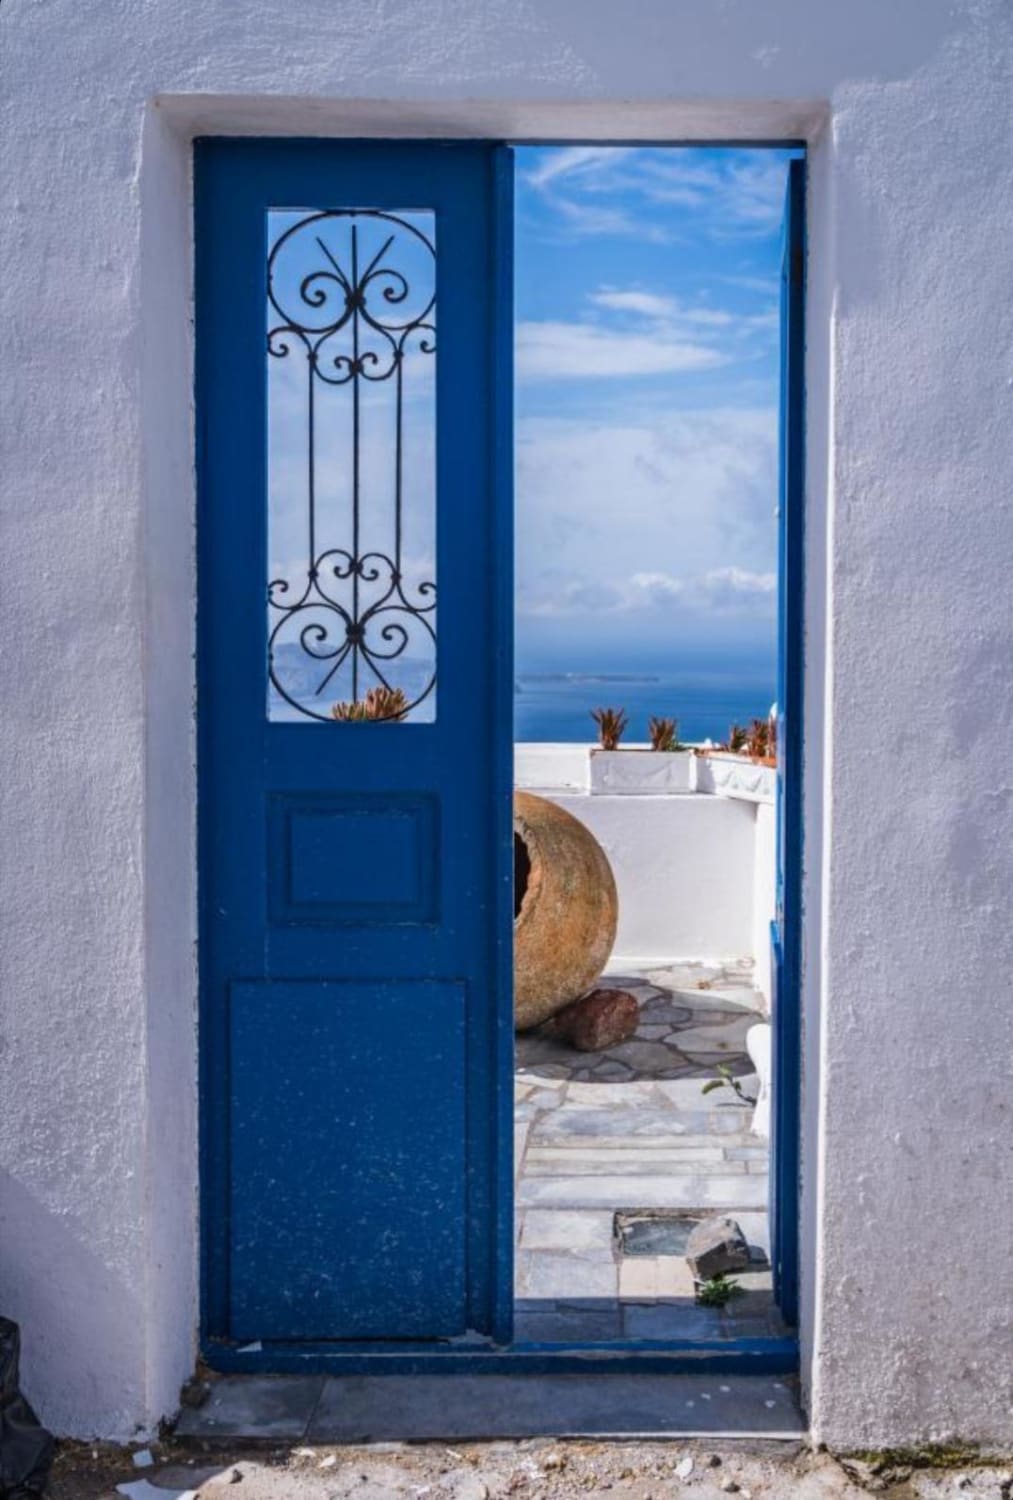 ITAP of a door in Santorini, Greece.